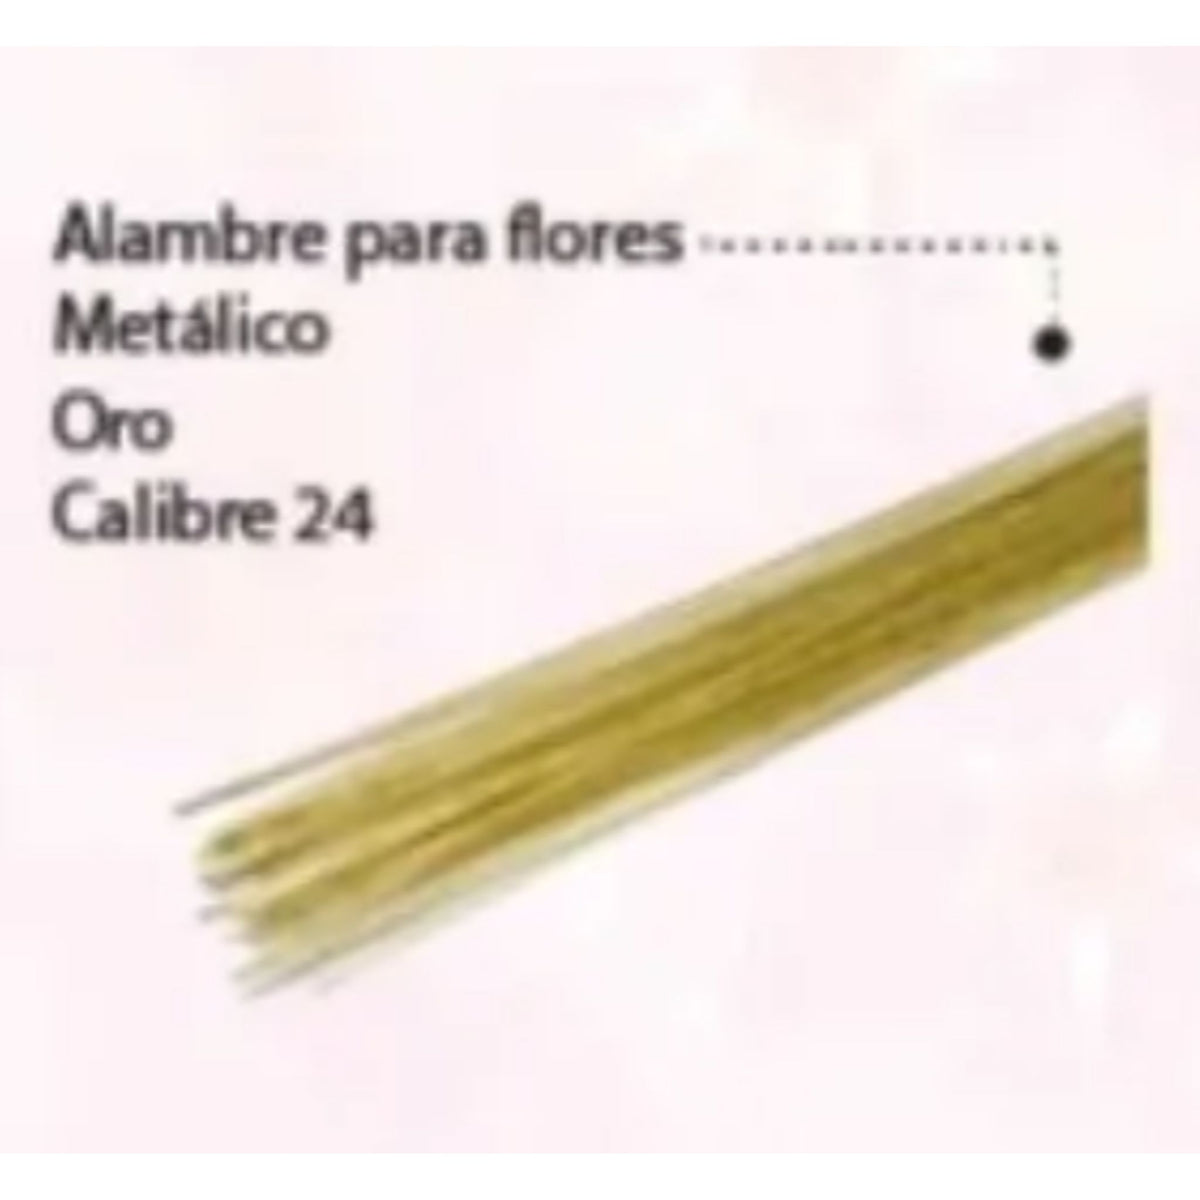 Alambre para Flores Metalico Oro (Calibre 20 y 24) – Cake Studio Mty